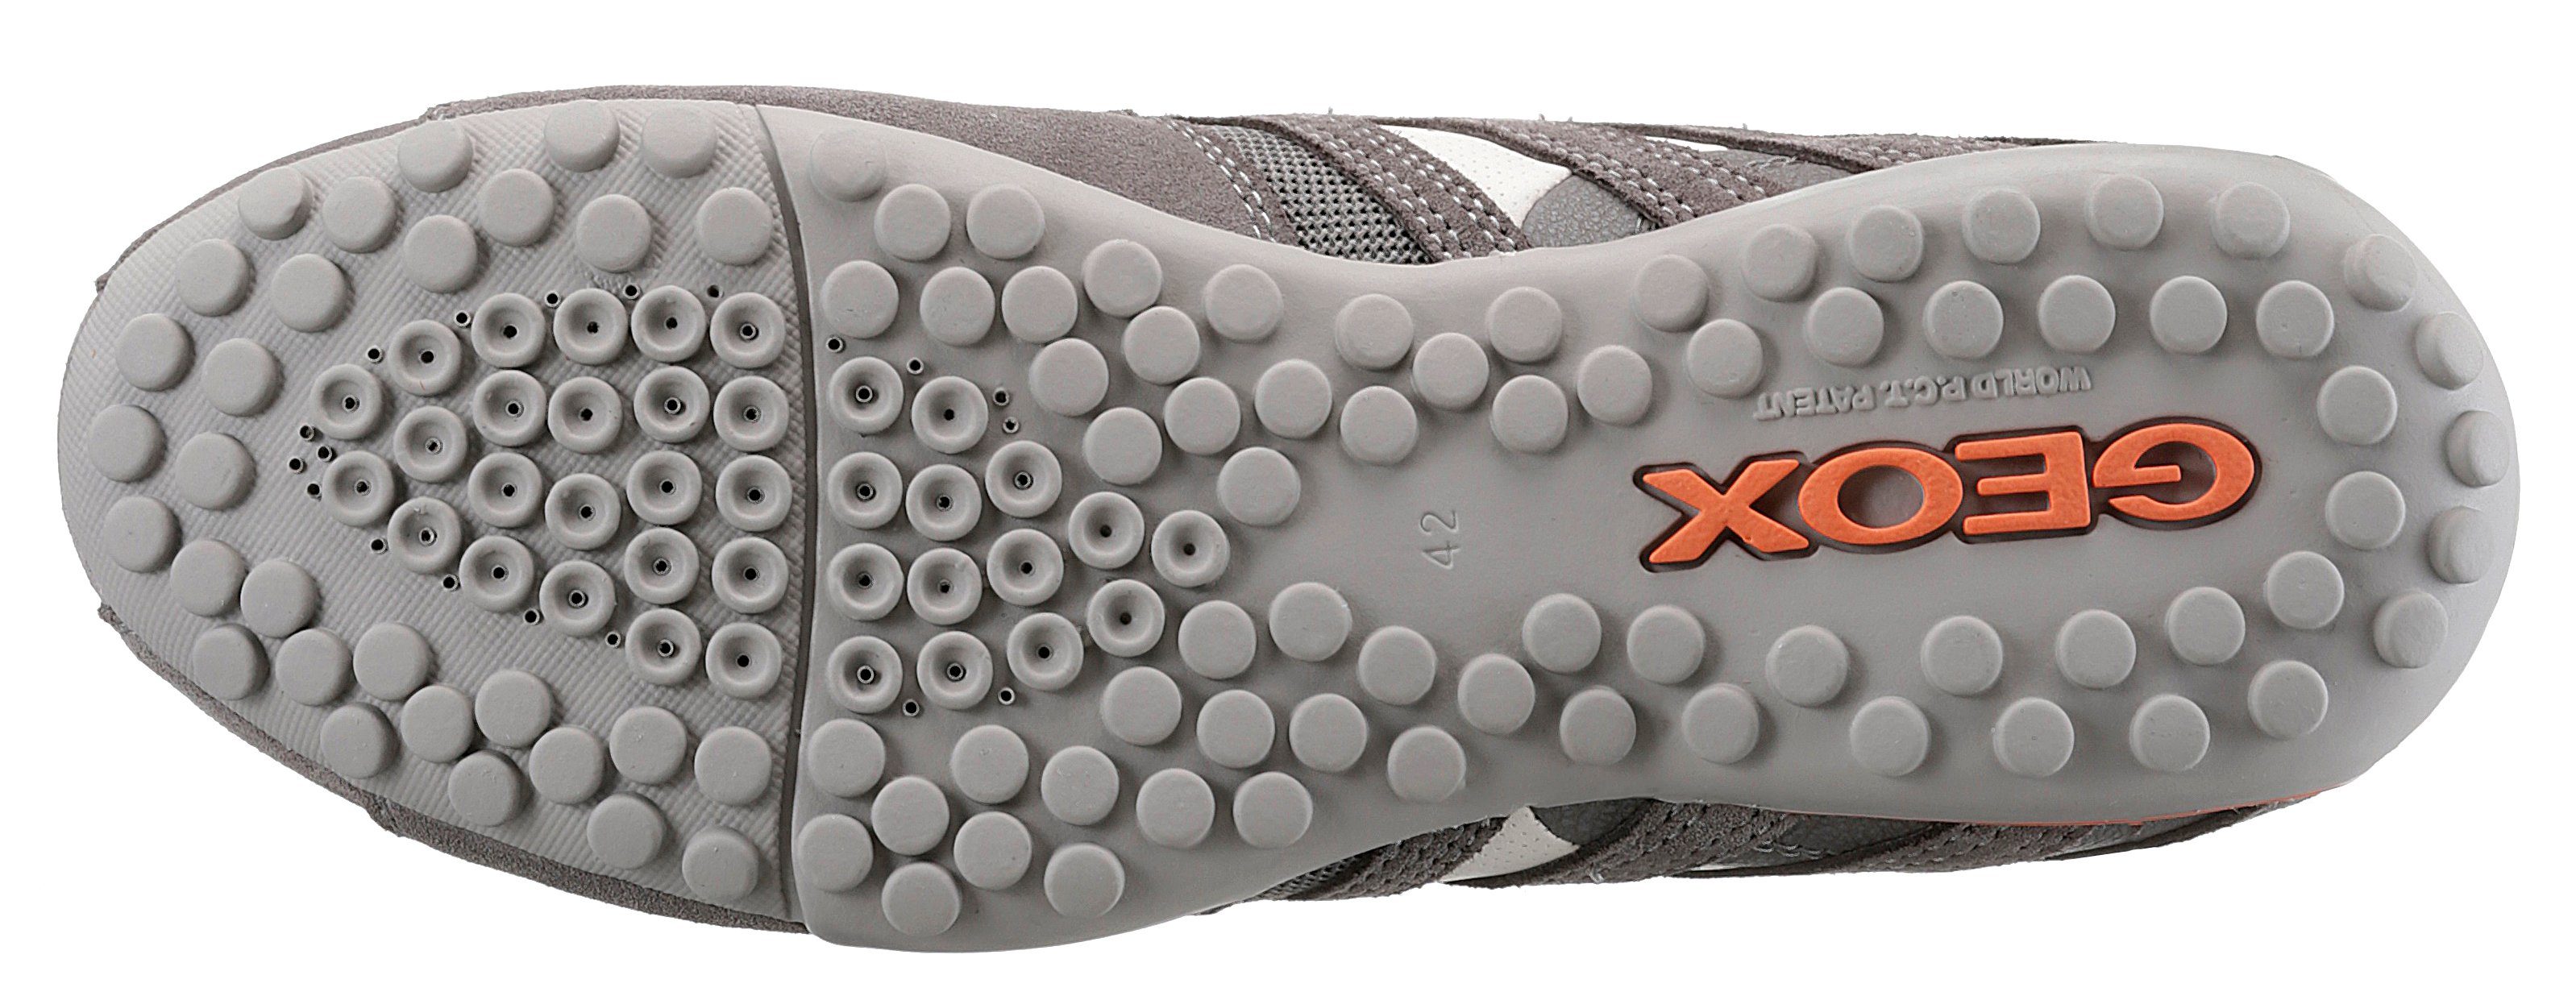 Spezial Geox hellgrau, Sneaker mit und Slip-On kombiniert SNAKE Ziernähten mit Membrane UOMO Geox modischen